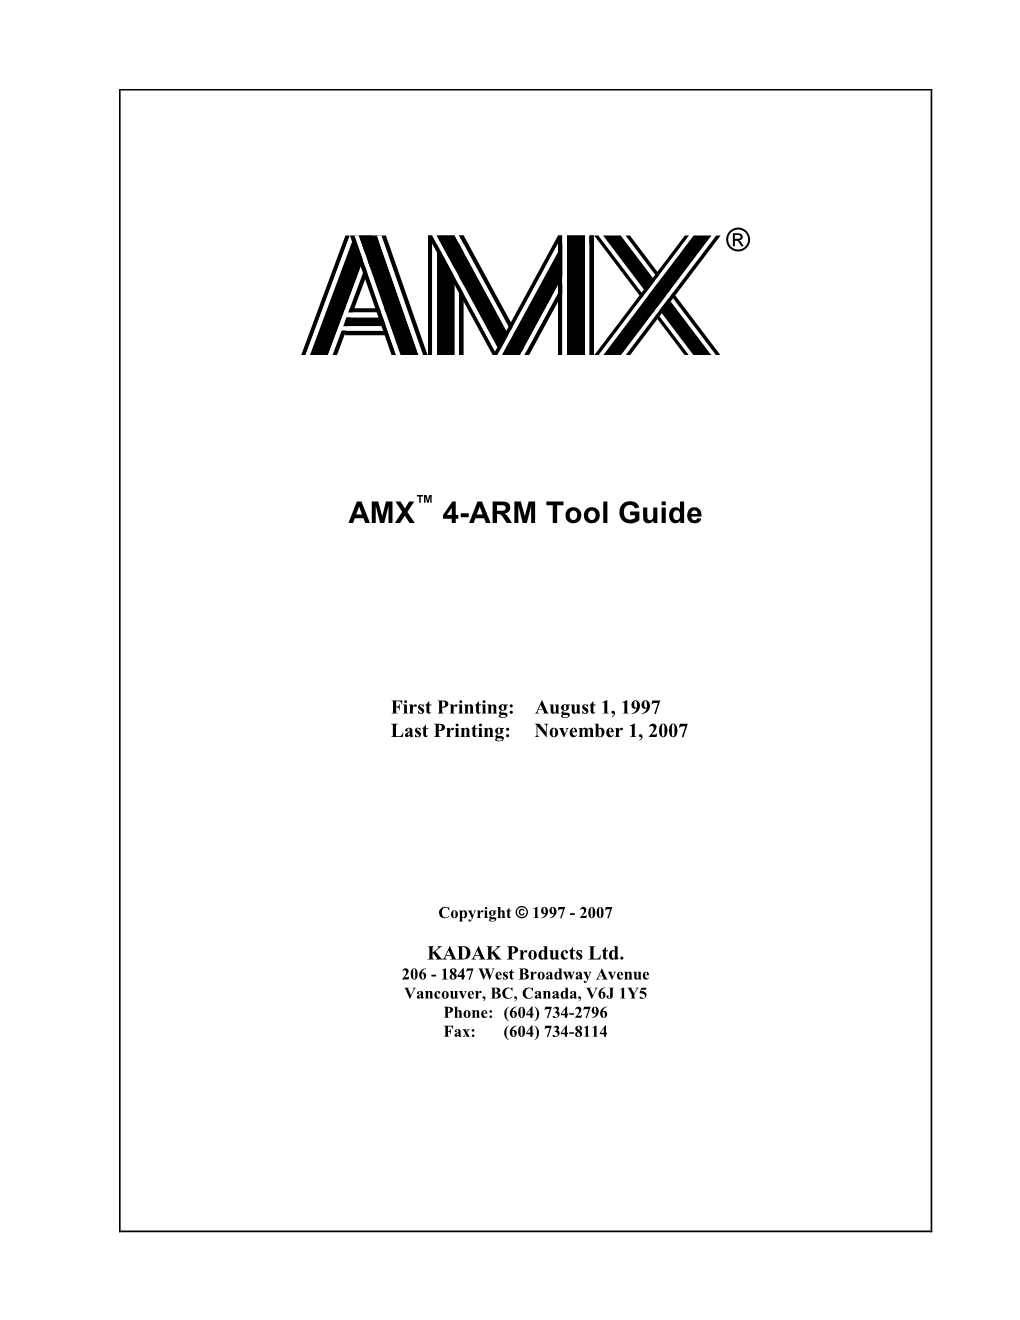 AMX 4-ARM Tool Guide KADAK I Copyright © 1997-2007 by KADAK Products Ltd